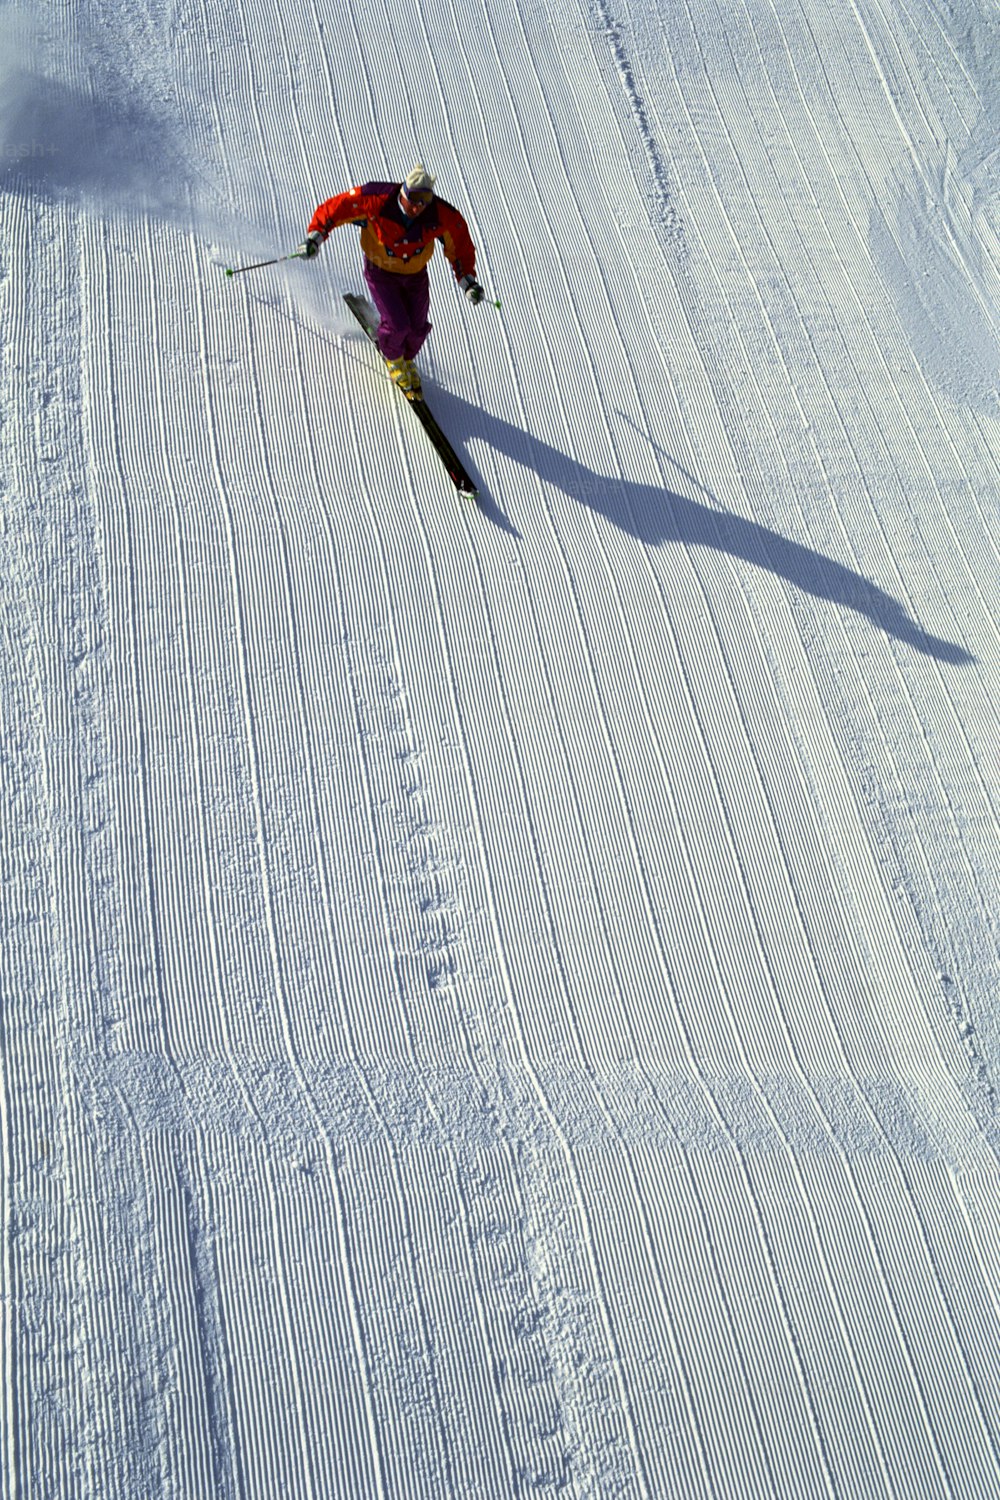 une personne qui dévale à skis une pente enneigée